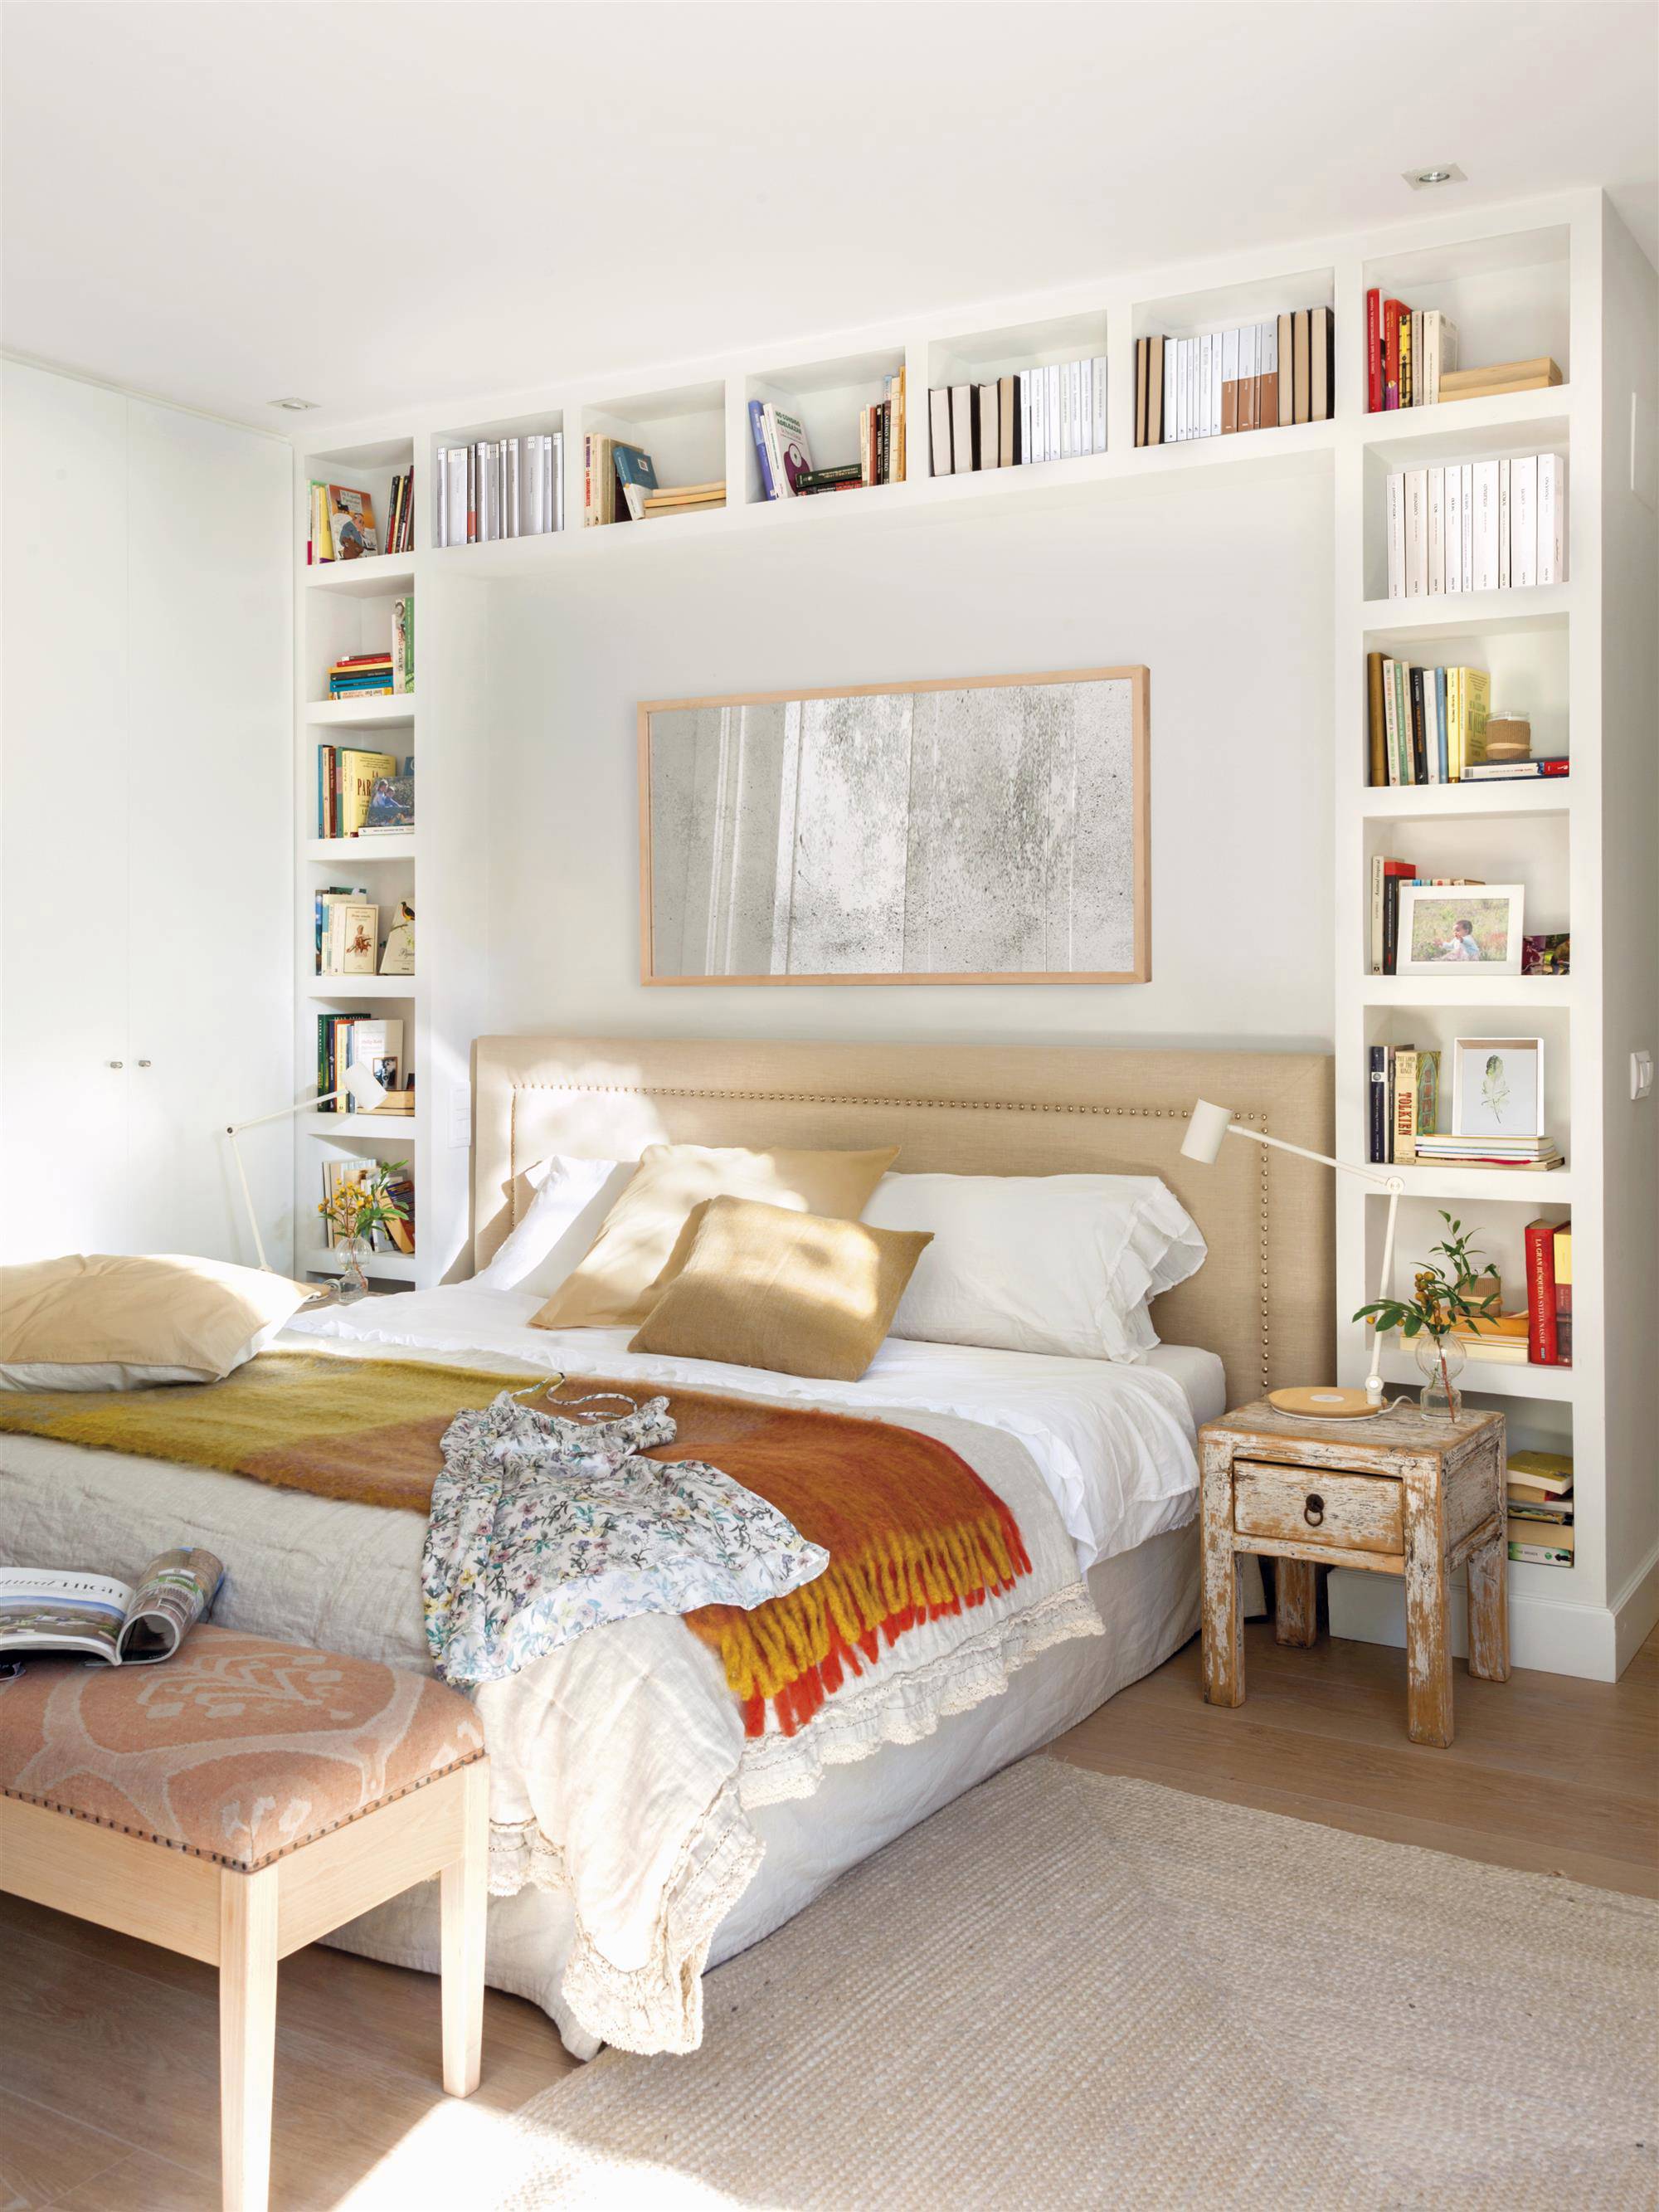 Dormitorio con librería de obra en la pared del cabecero.